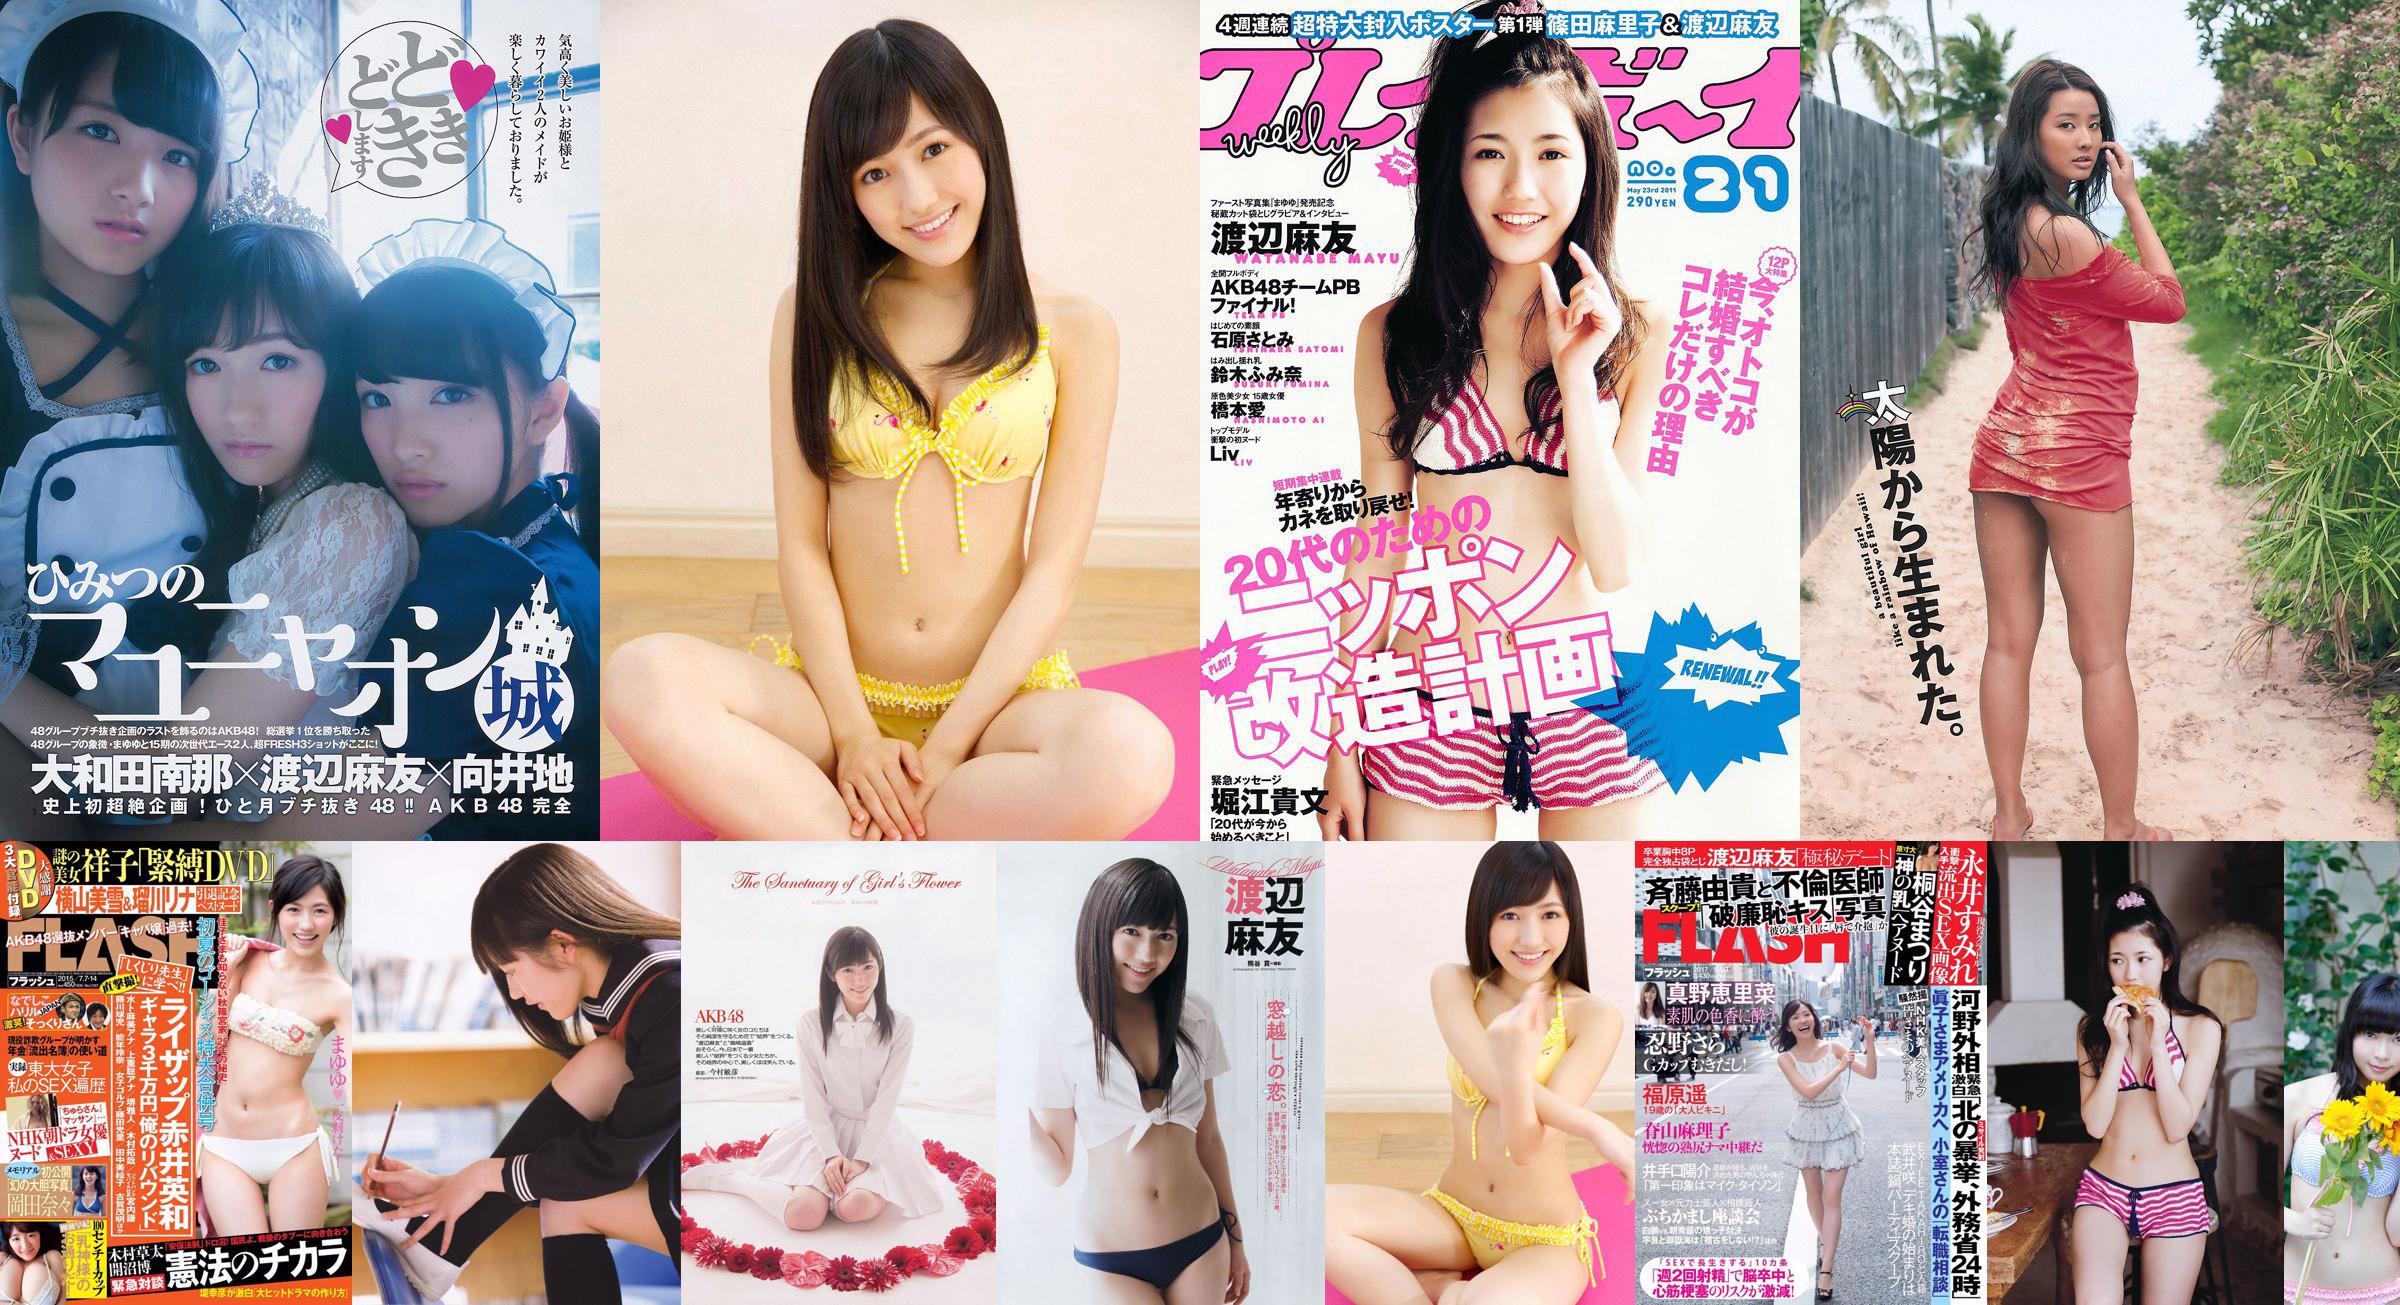 Mayu Watanabe Yuri Murakami Yuai Kana Anri Sugihara SKE48 [Playboy semanal] 2011 No.47 Fotografía No.855326 Página 2